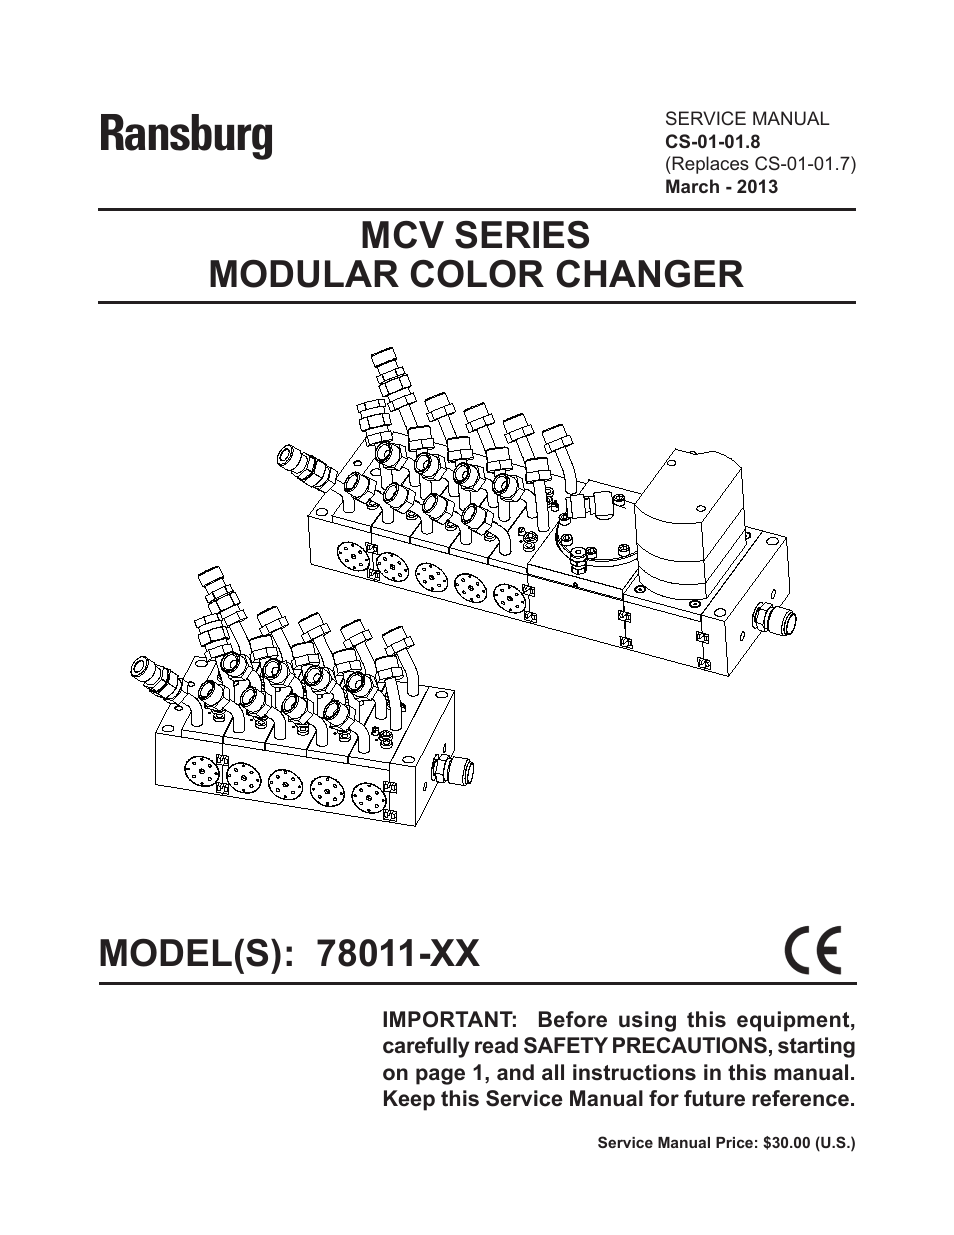 MCV Series Module Color Changer 78011-XX